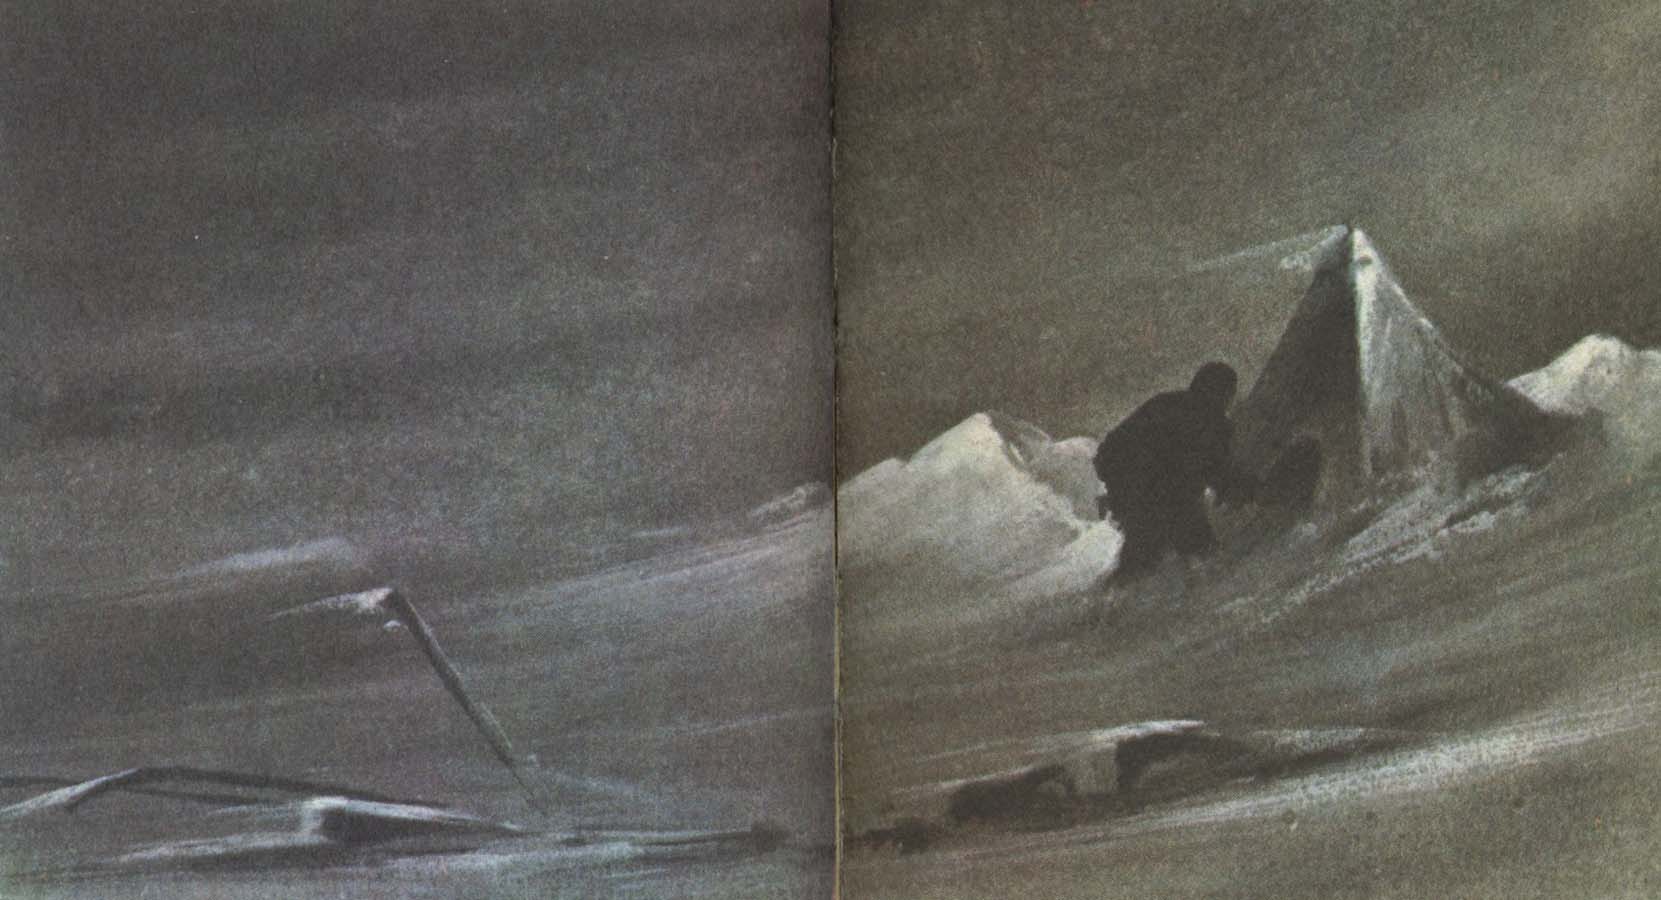 wilson fangade med stor inlevelse dramatiken och ogastvan ligheten i polarlandskapet i manga av sina skissr ovan ses en isformation pa rossons strand